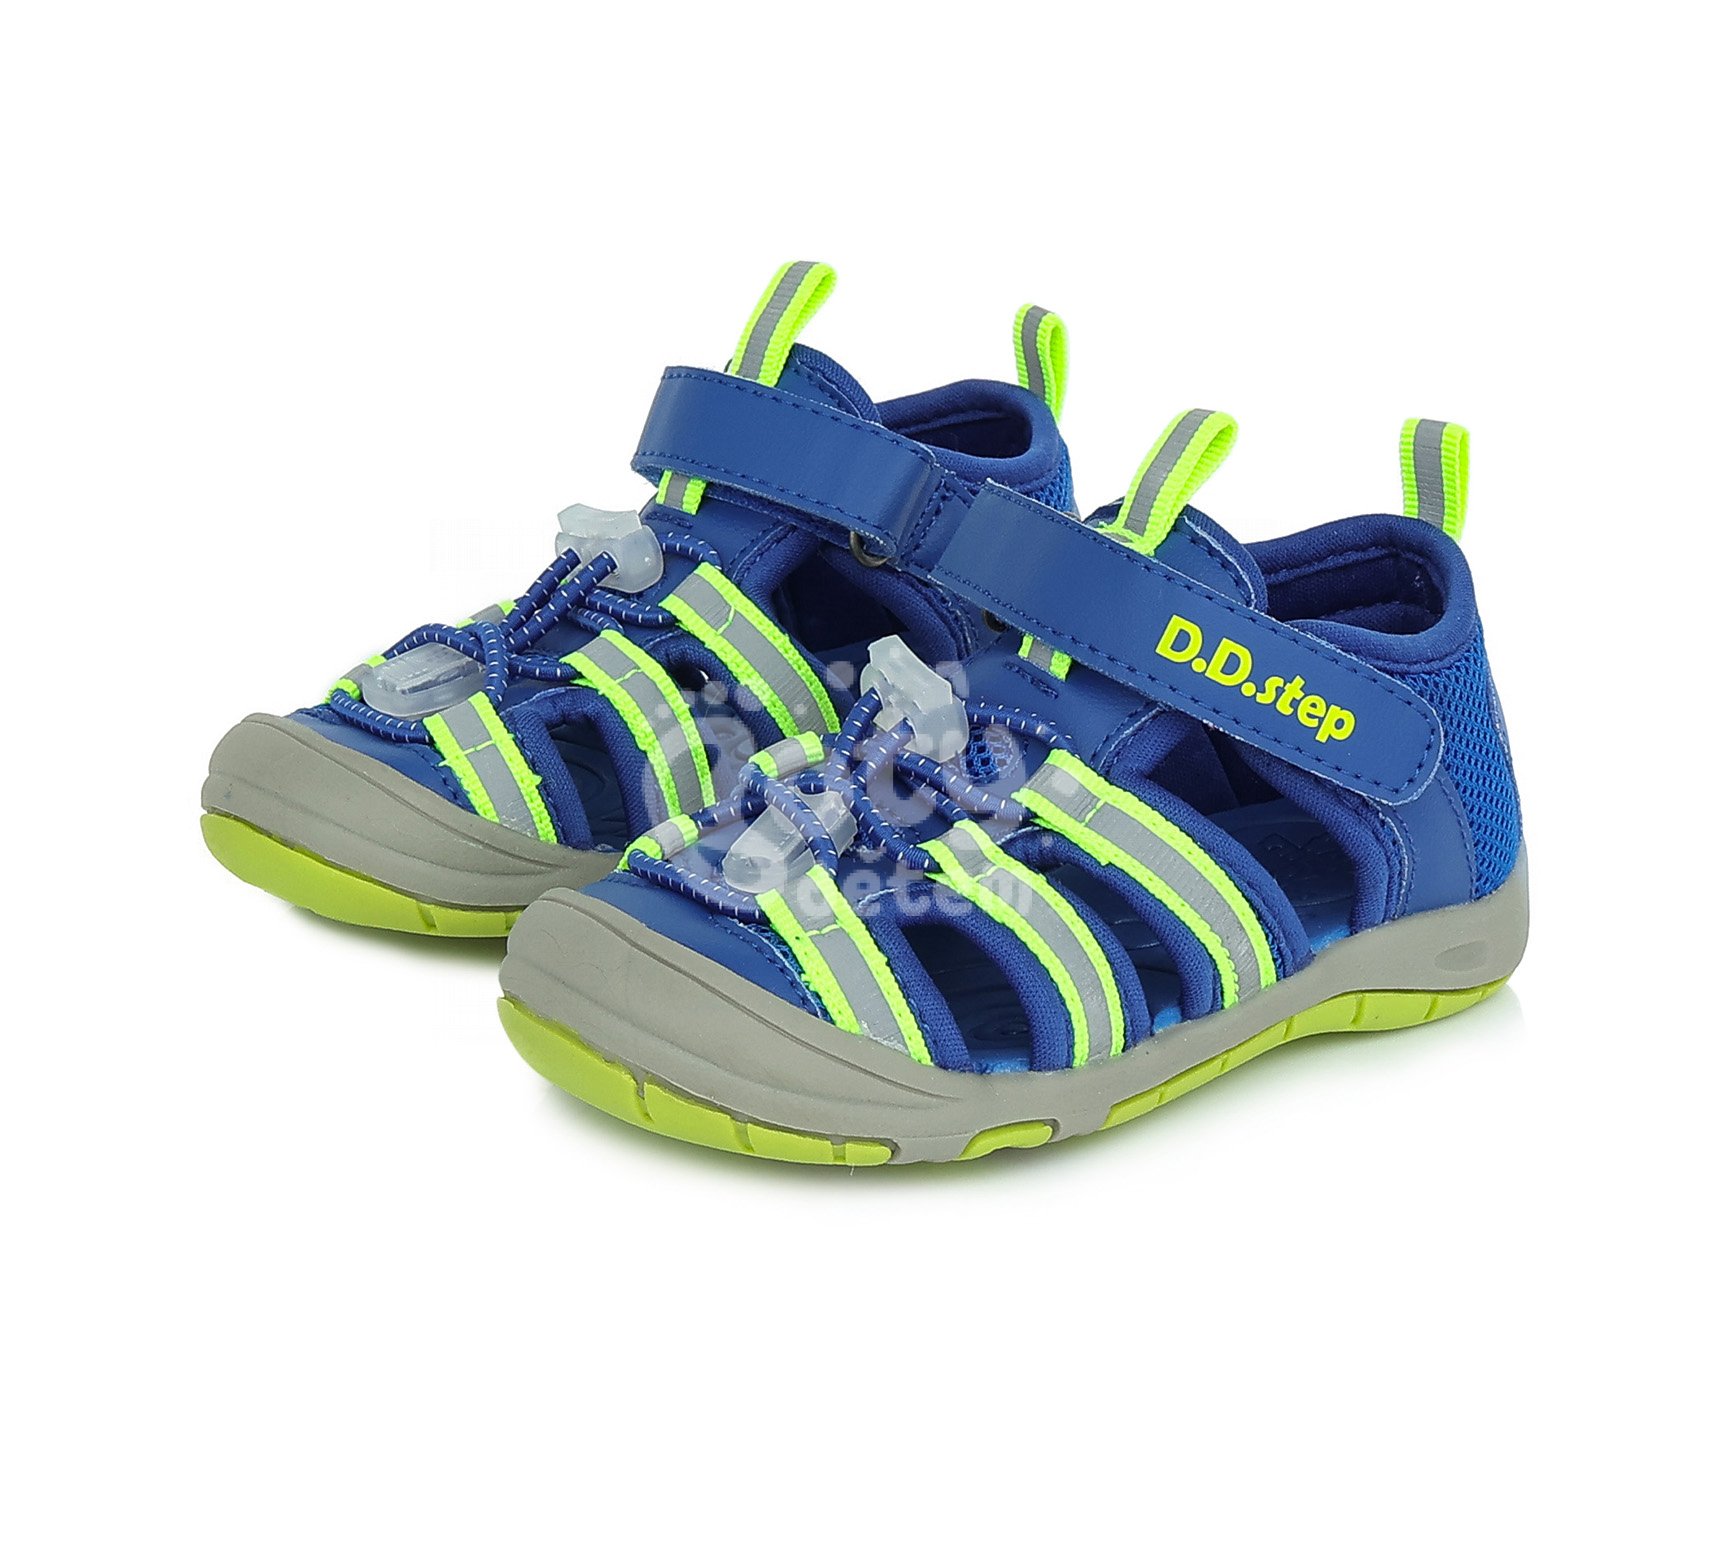 Sportovní sandálky D.D.step G065-384 Bermuda Blue